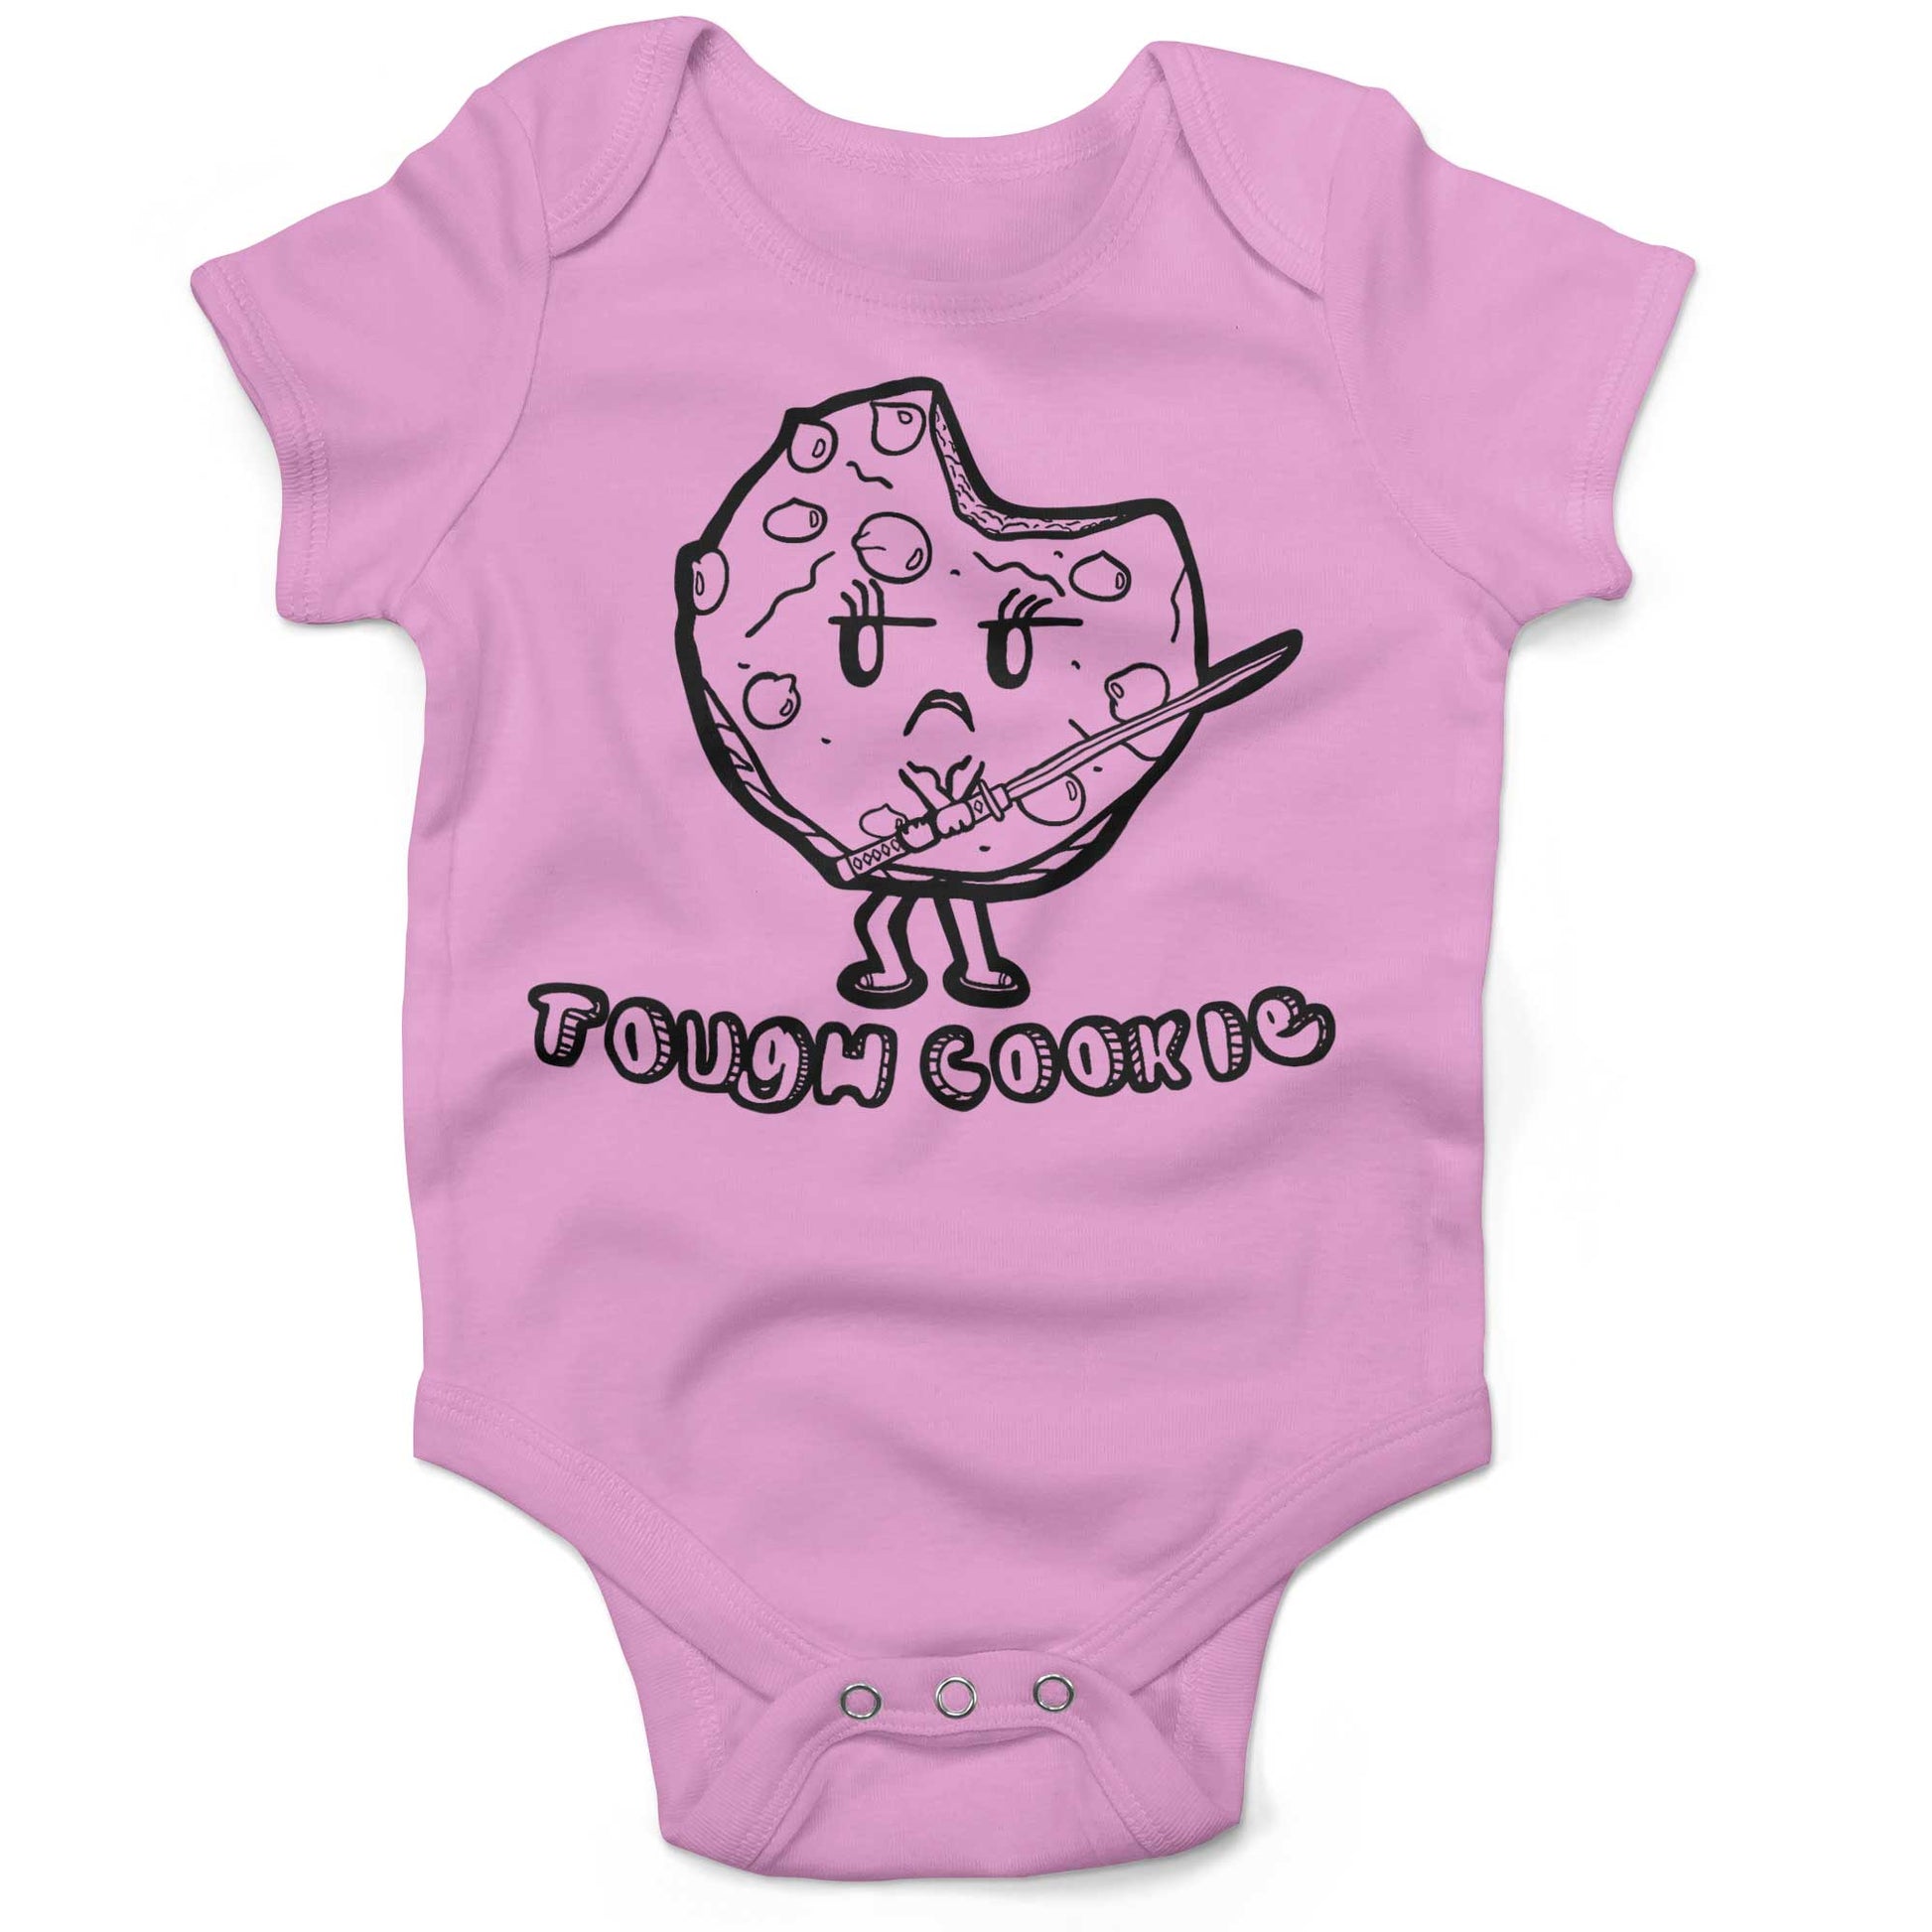 Tough Cookie Infant Bodysuit or Raglan Tee-Organic Pink-3-6 months